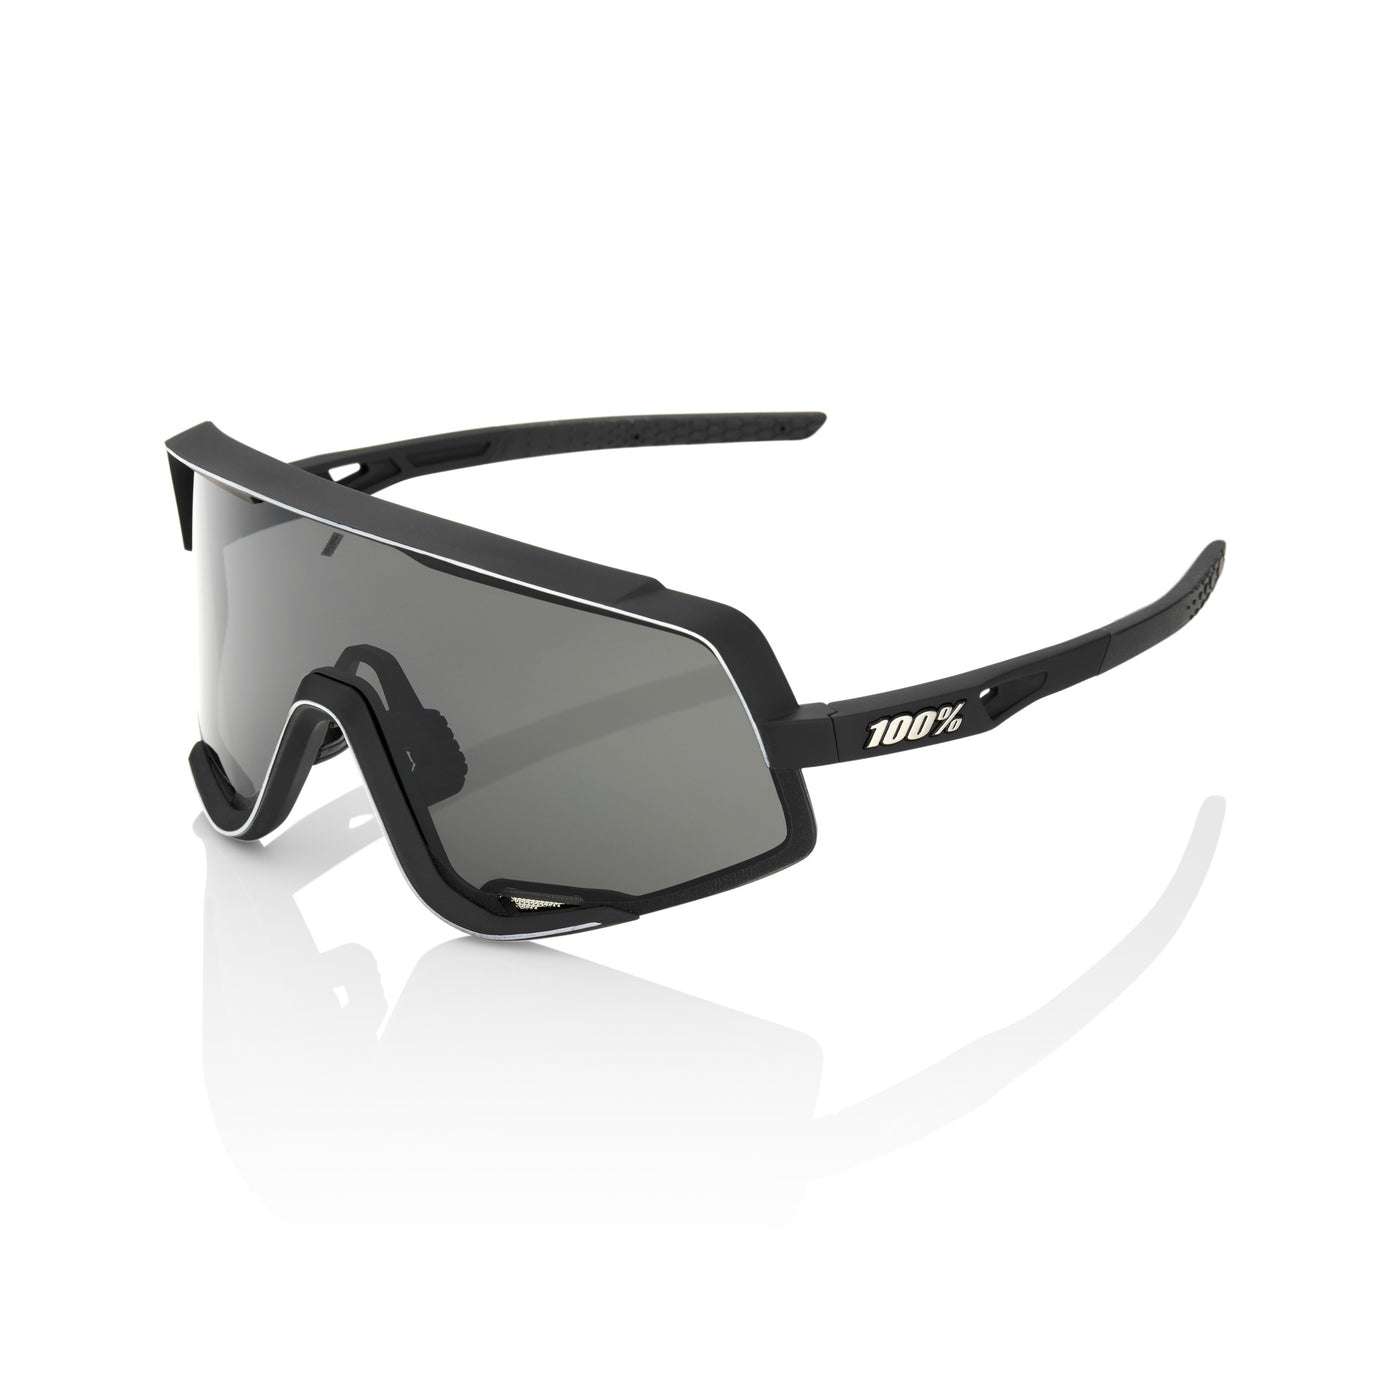 Sunglasses 100% Glendale - Soft Tact Black - Smoke